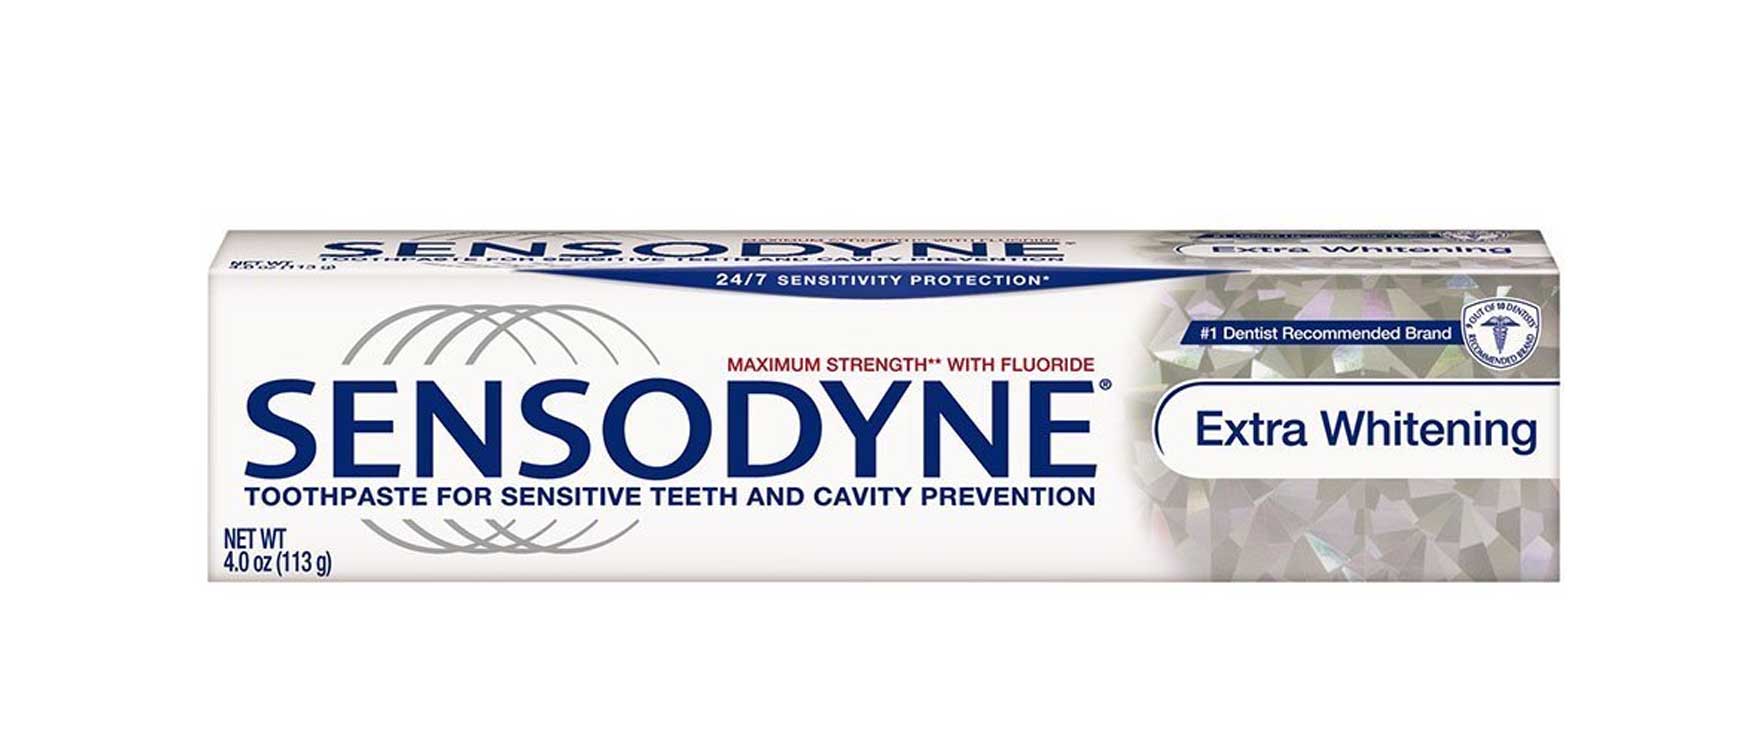 3. Sensodyne Extra Whitening Toothpaste